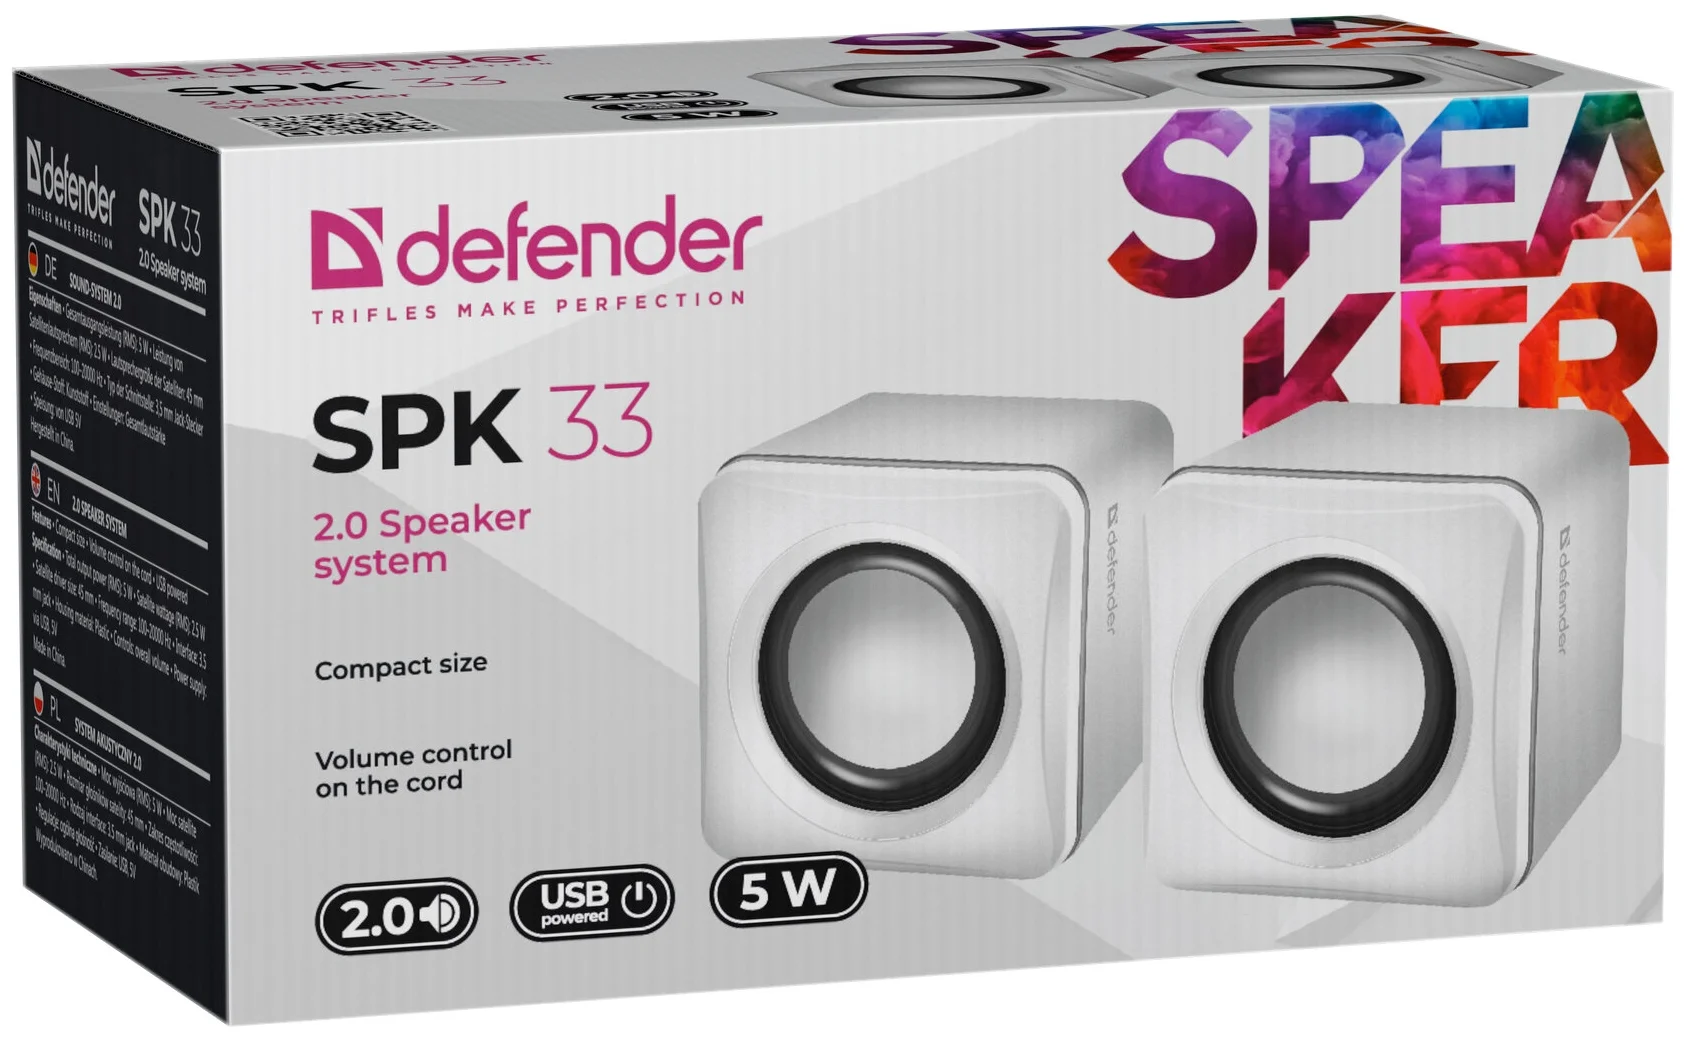 Defender SPK 33